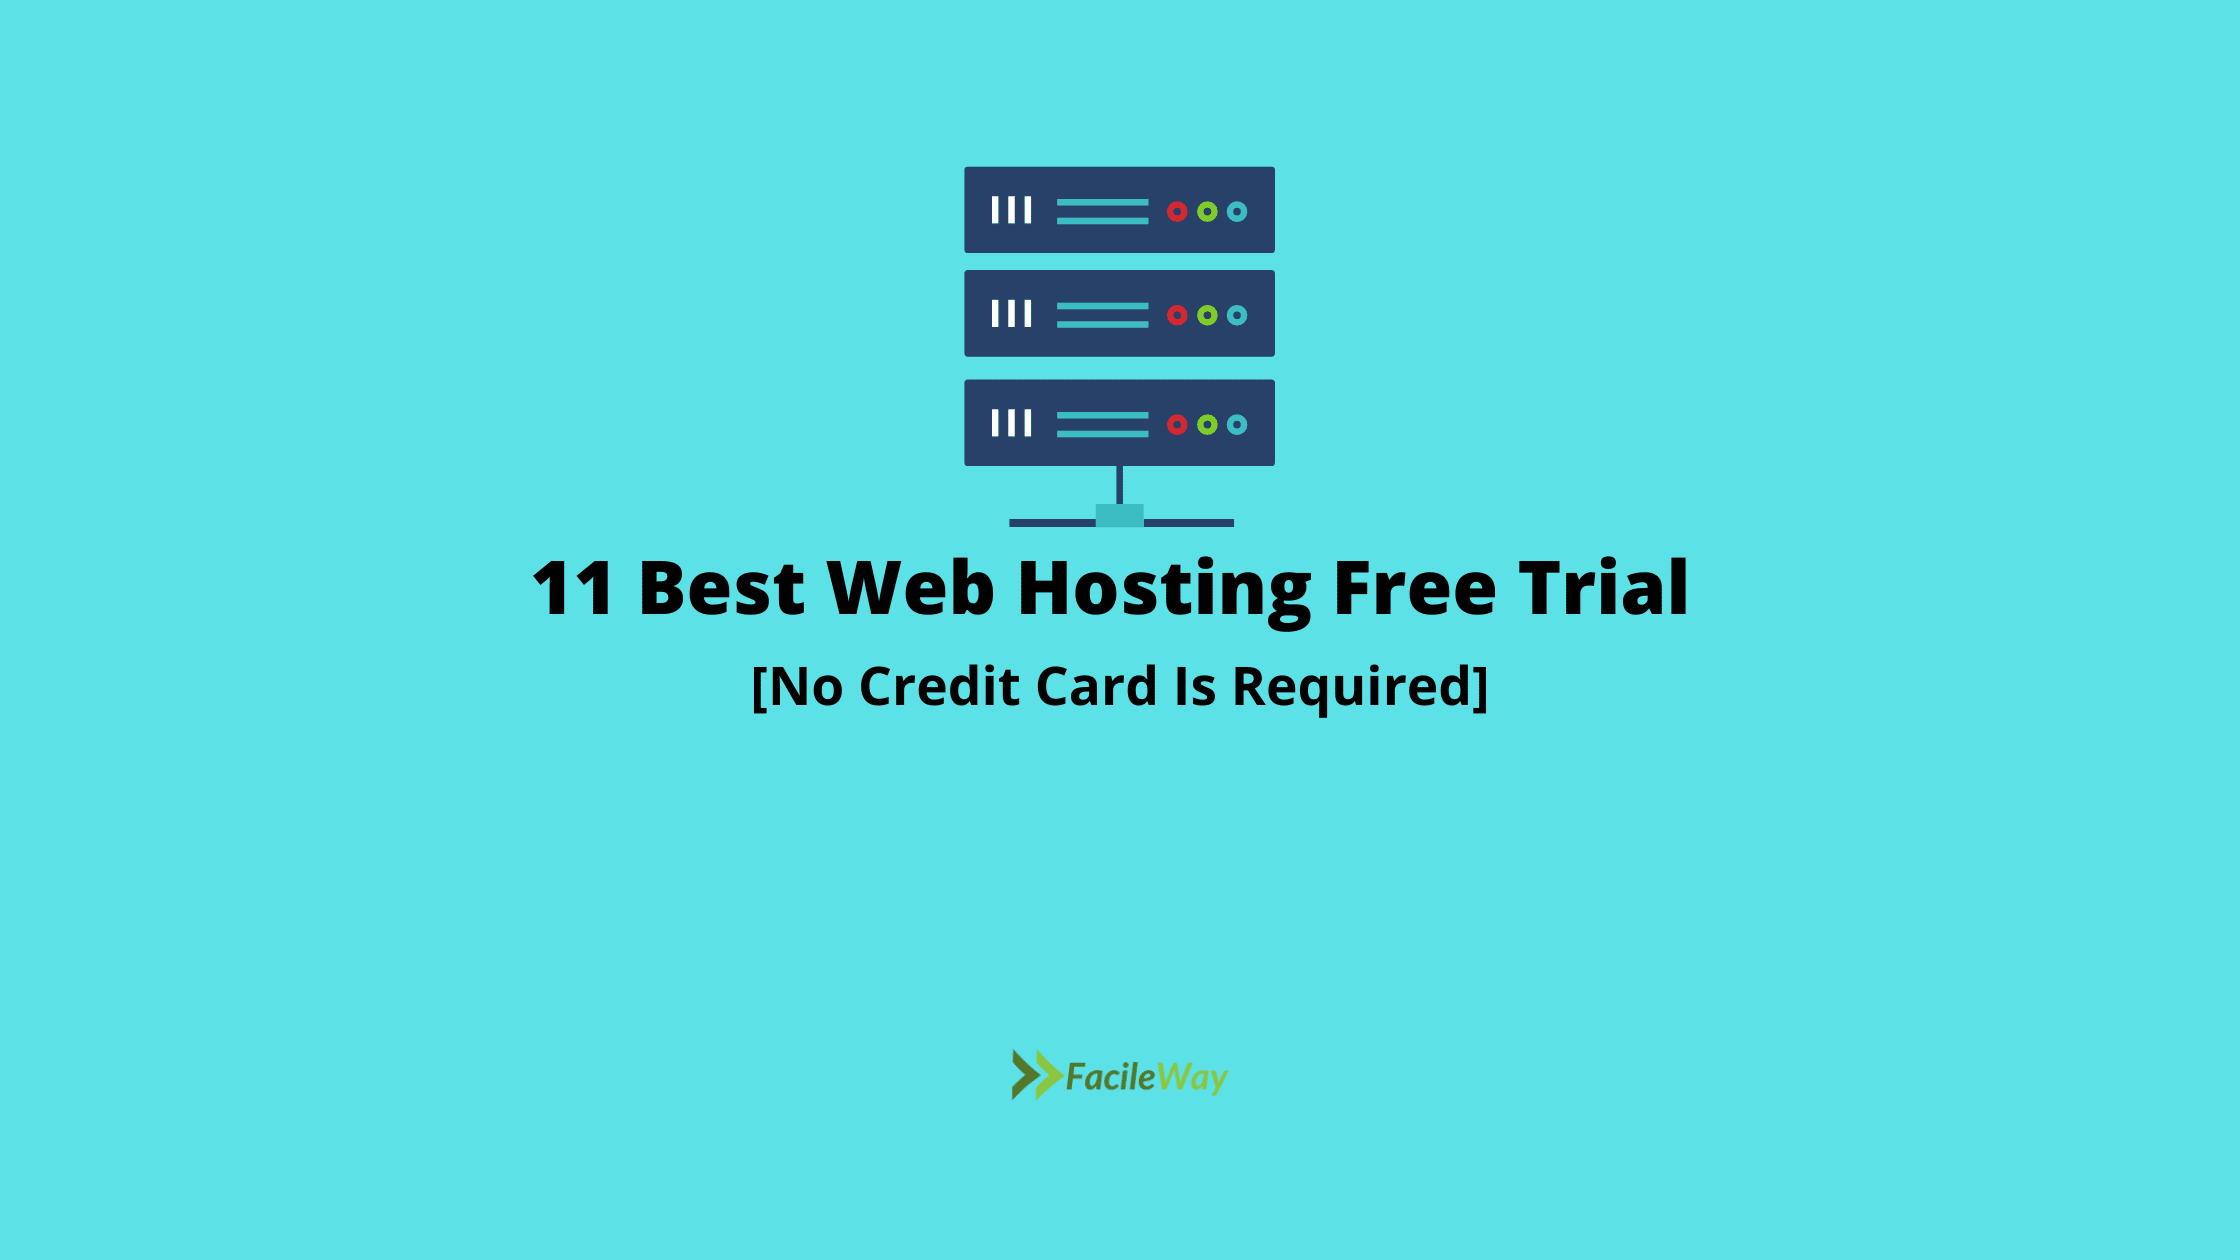 Best Web Hosting Free Trial